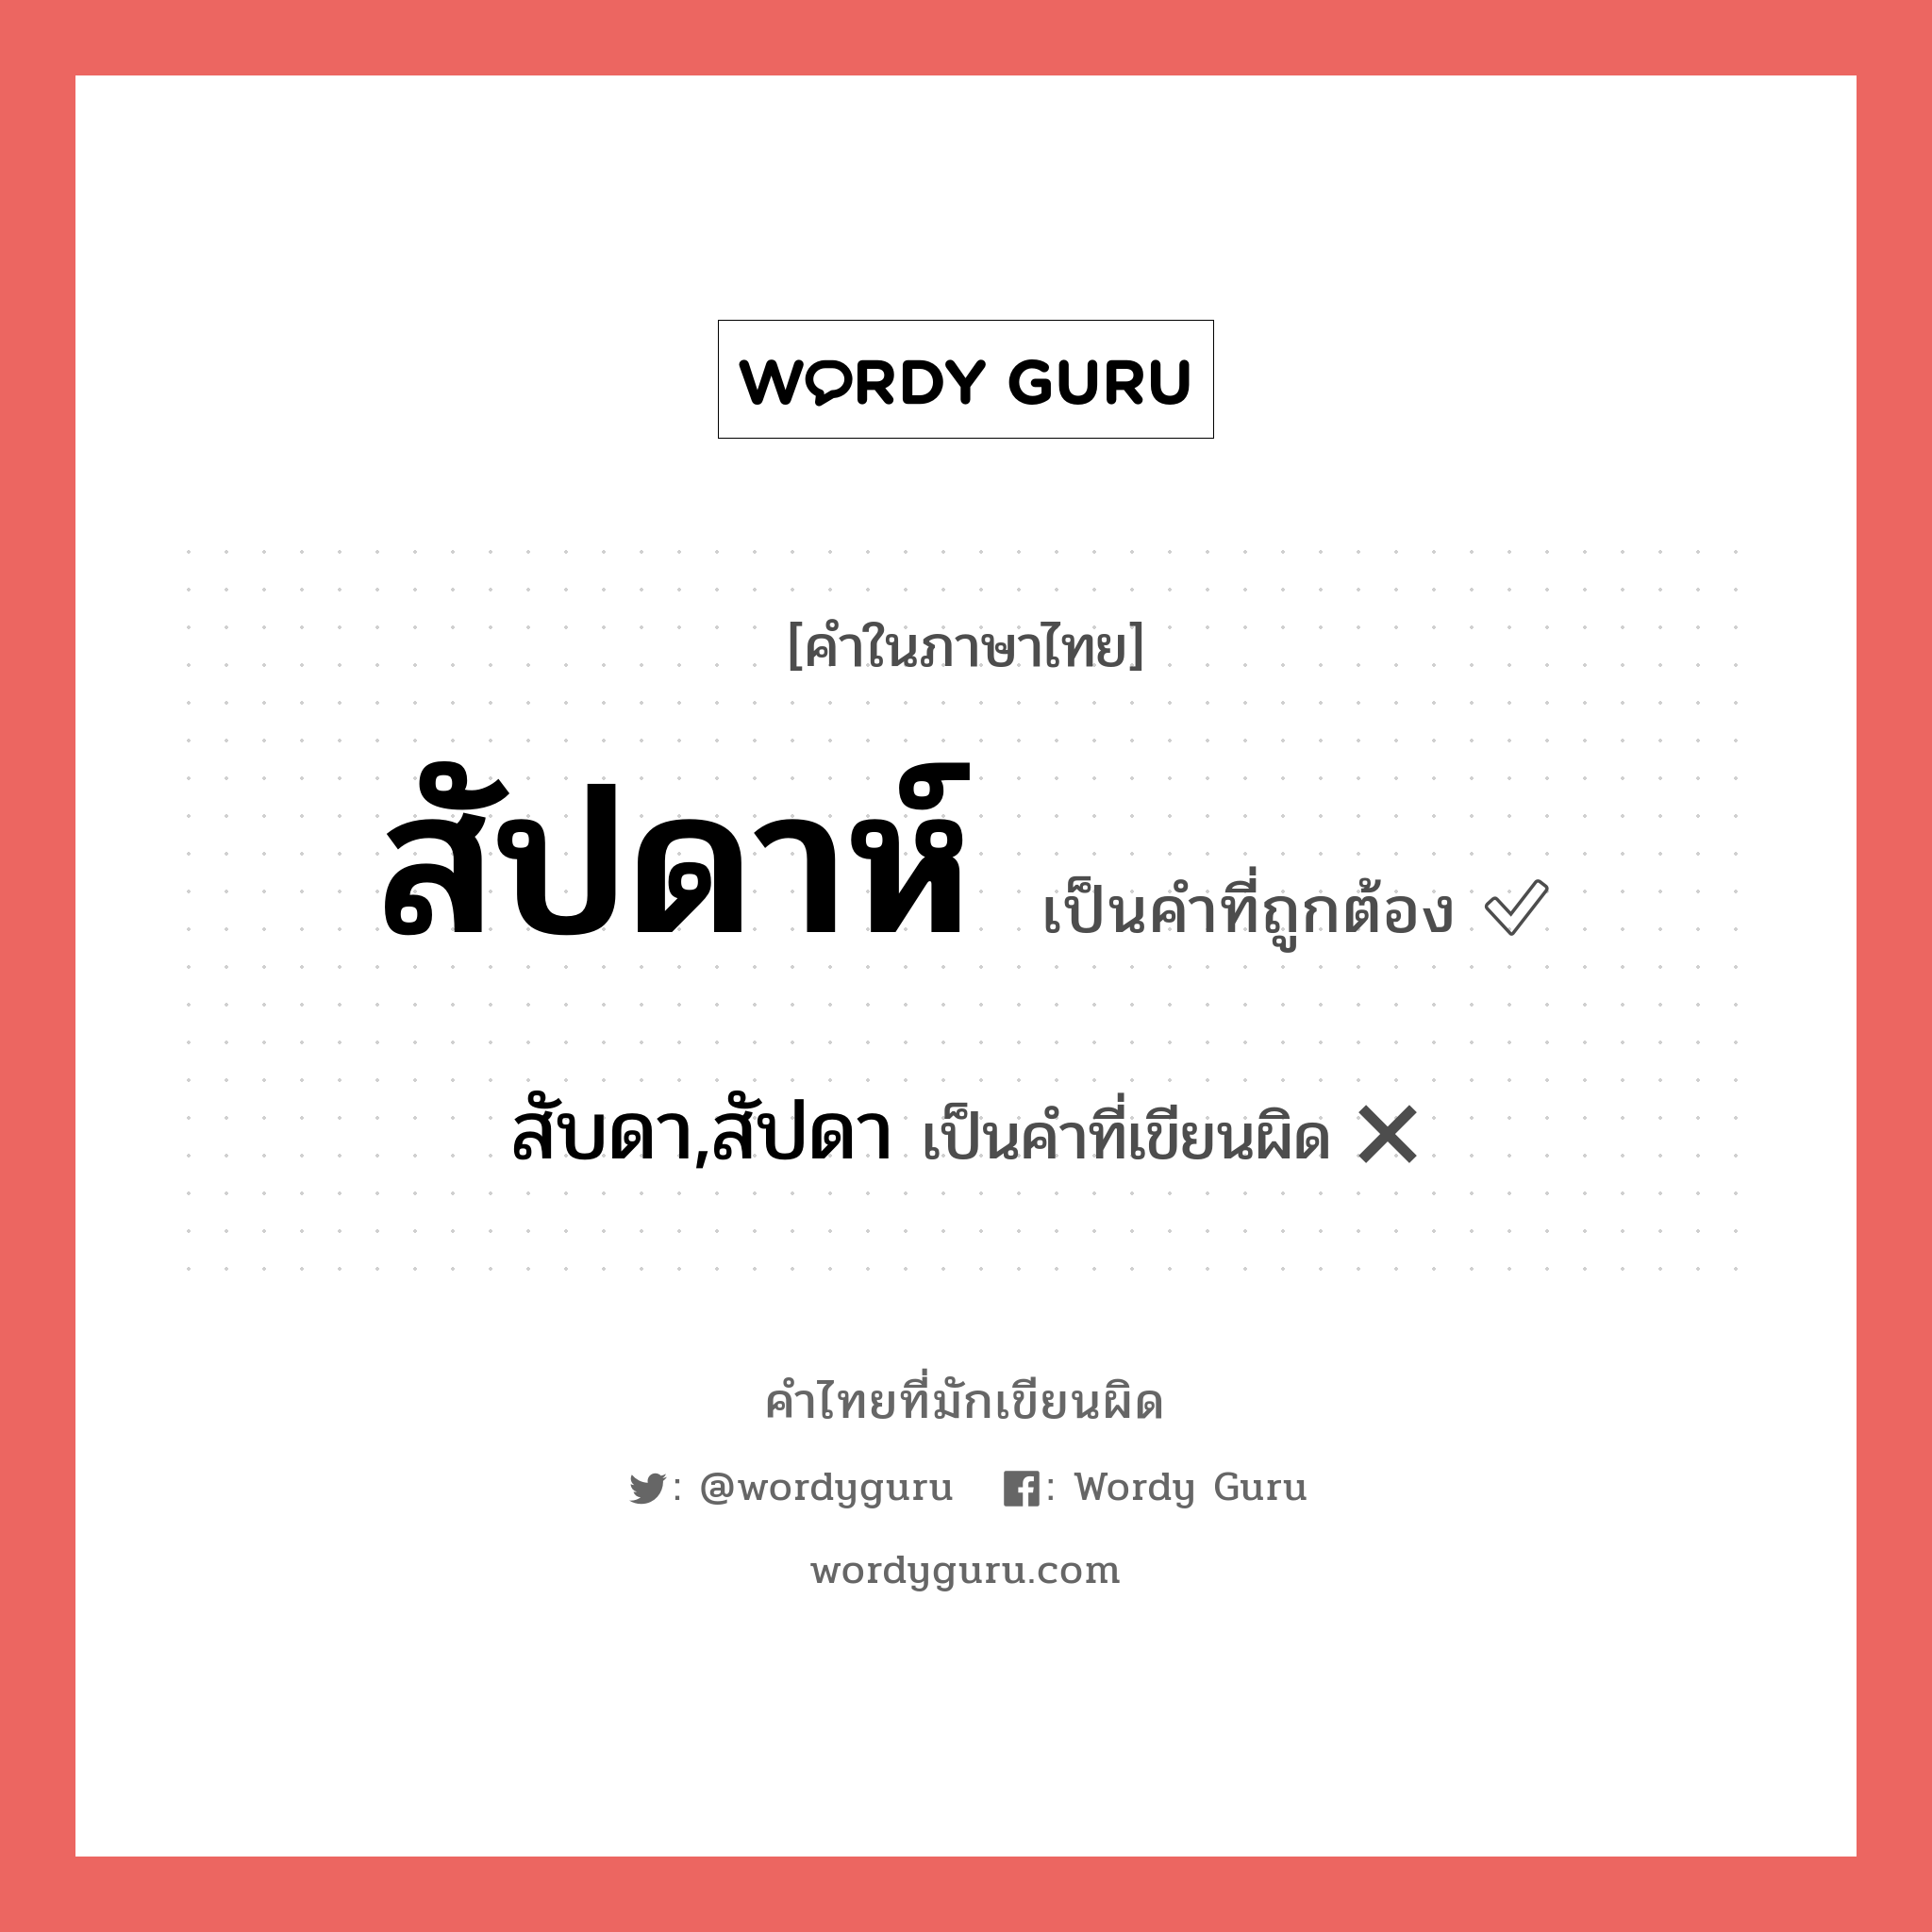 สับดา,สัปดา หรือ สัปดาห์ คำไหนเขียนถูก?, คำในภาษาไทยที่มักเขียนผิด สับดา,สัปดา คำที่ผิด ❌ สัปดาห์